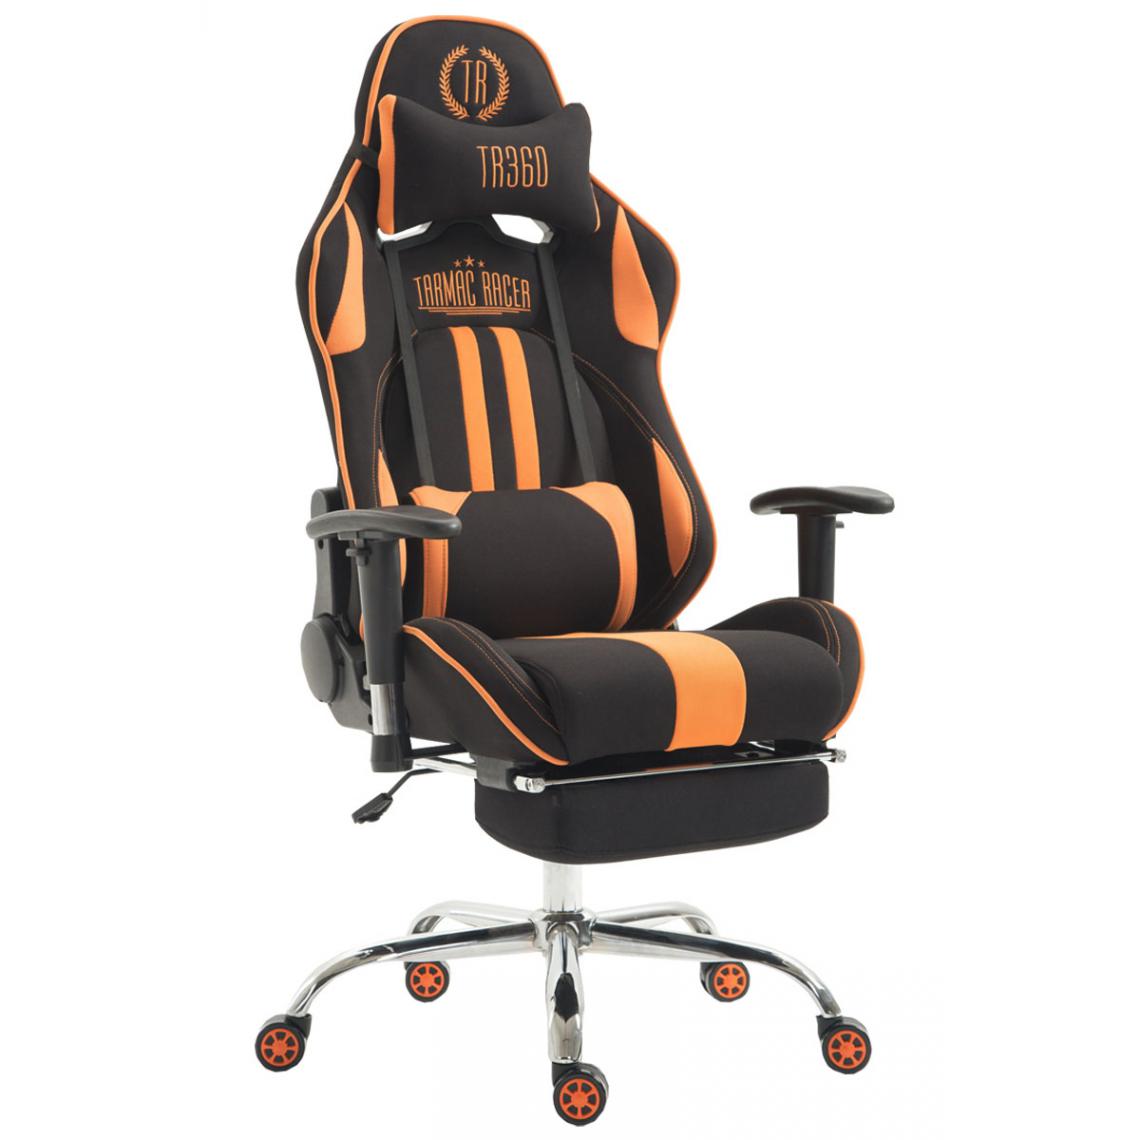 Icaverne - Stylé Chaise de bureau serie Luanda tissu Limit avec repose-pieds couleur noir / orange - Chaises